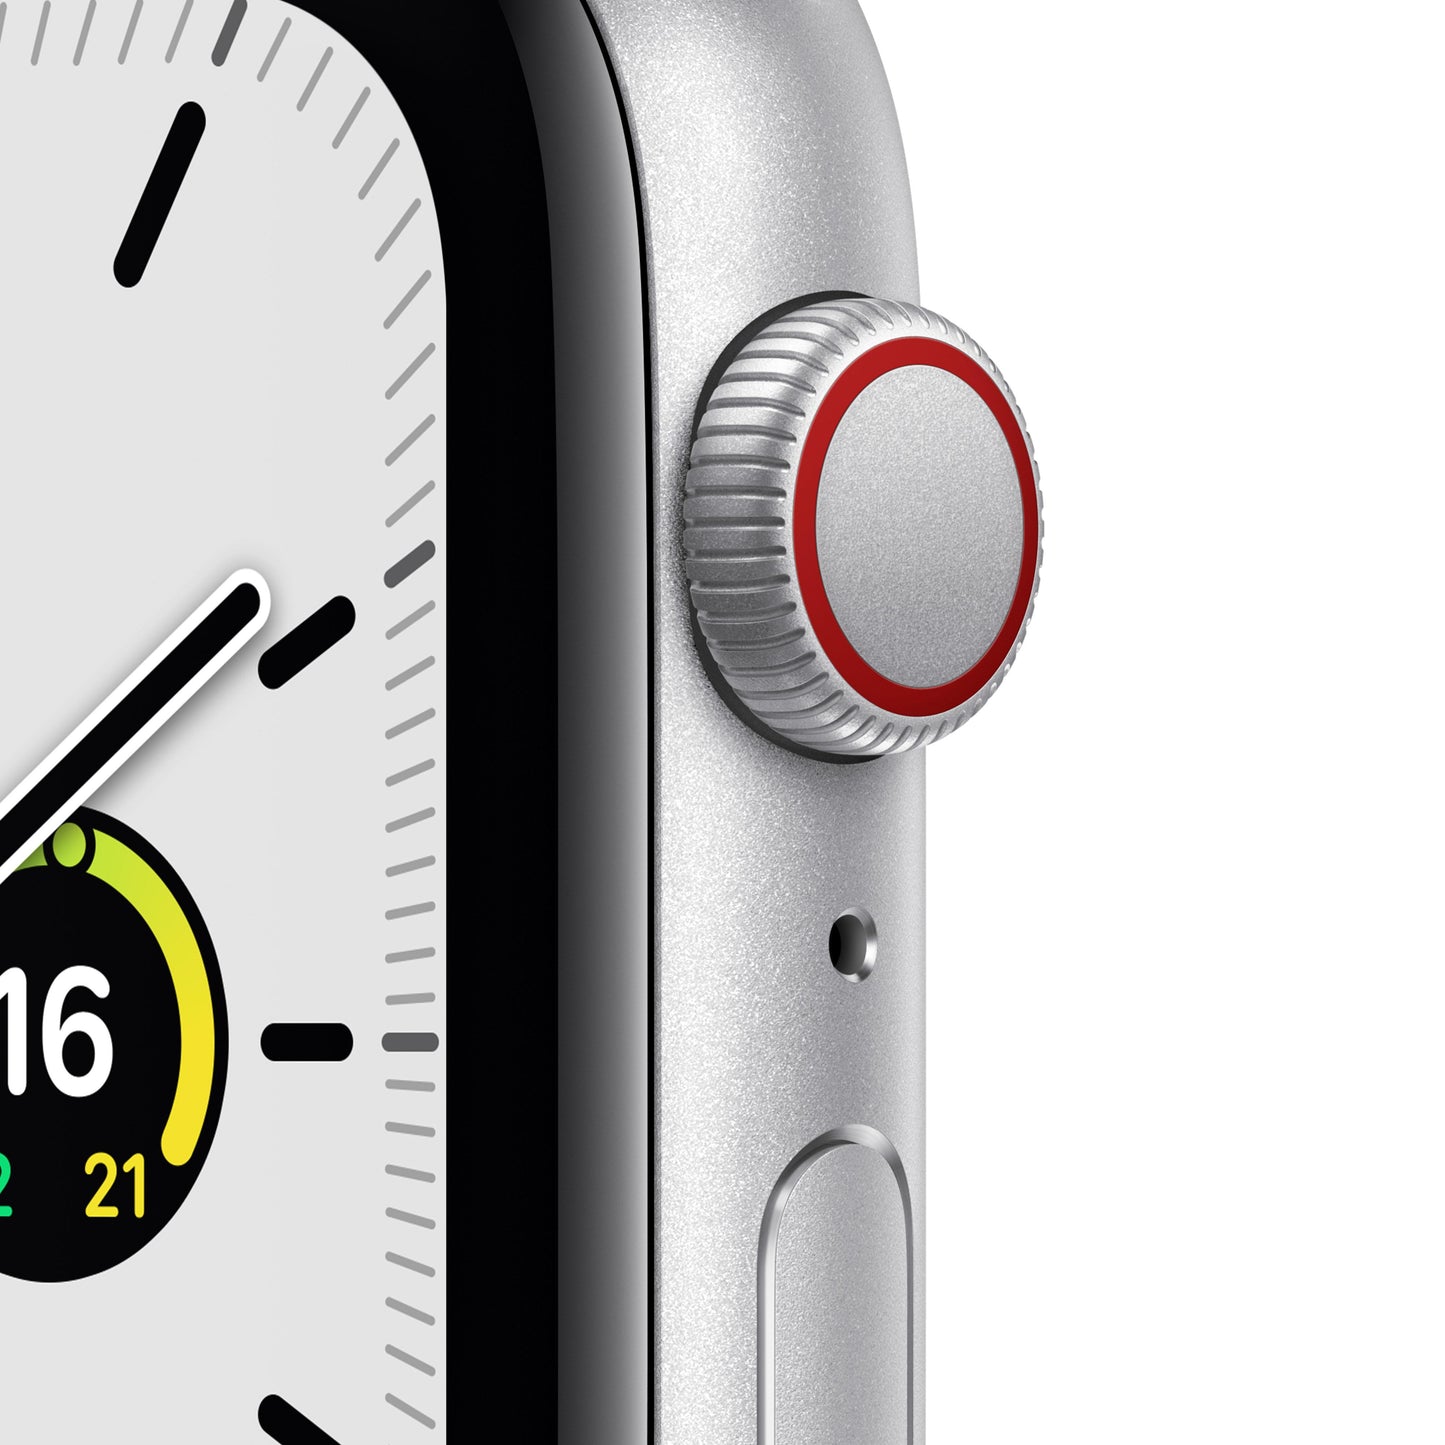 Apple Watch SE (GPS + Cellular) - Caja de aluminio en plata de 44 mm - Correa Loop deportiva en color abismo/verde musgo